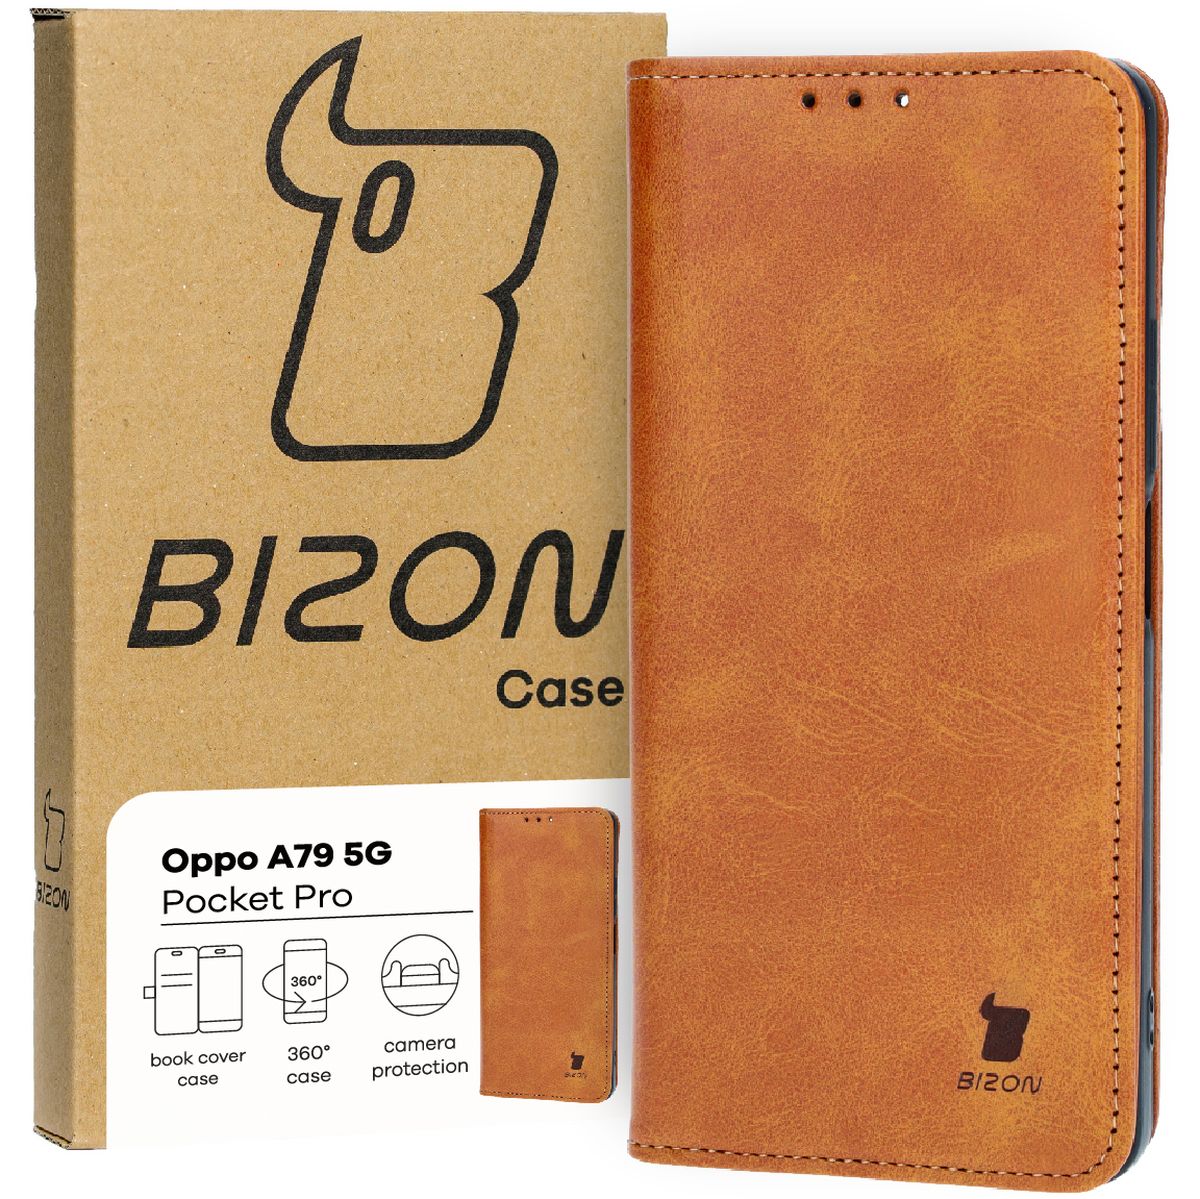 Schutzhülle für Oppo A79 5G, Bizon Case Pocket Pro, Braun